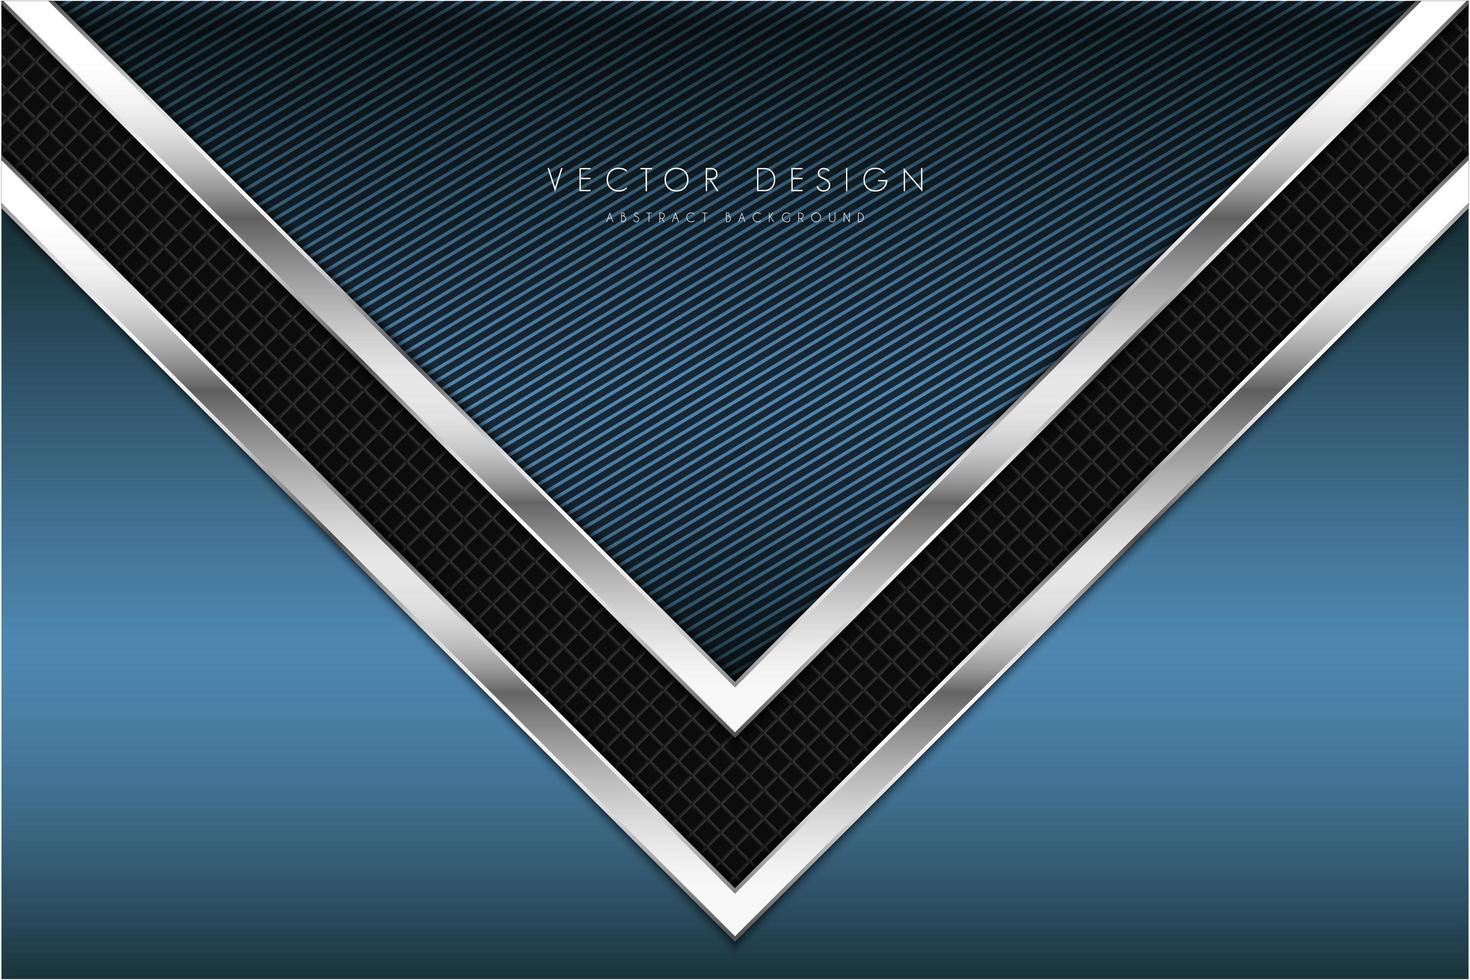 blauwe technologische metaalachtergrond met pijlvorm. vector